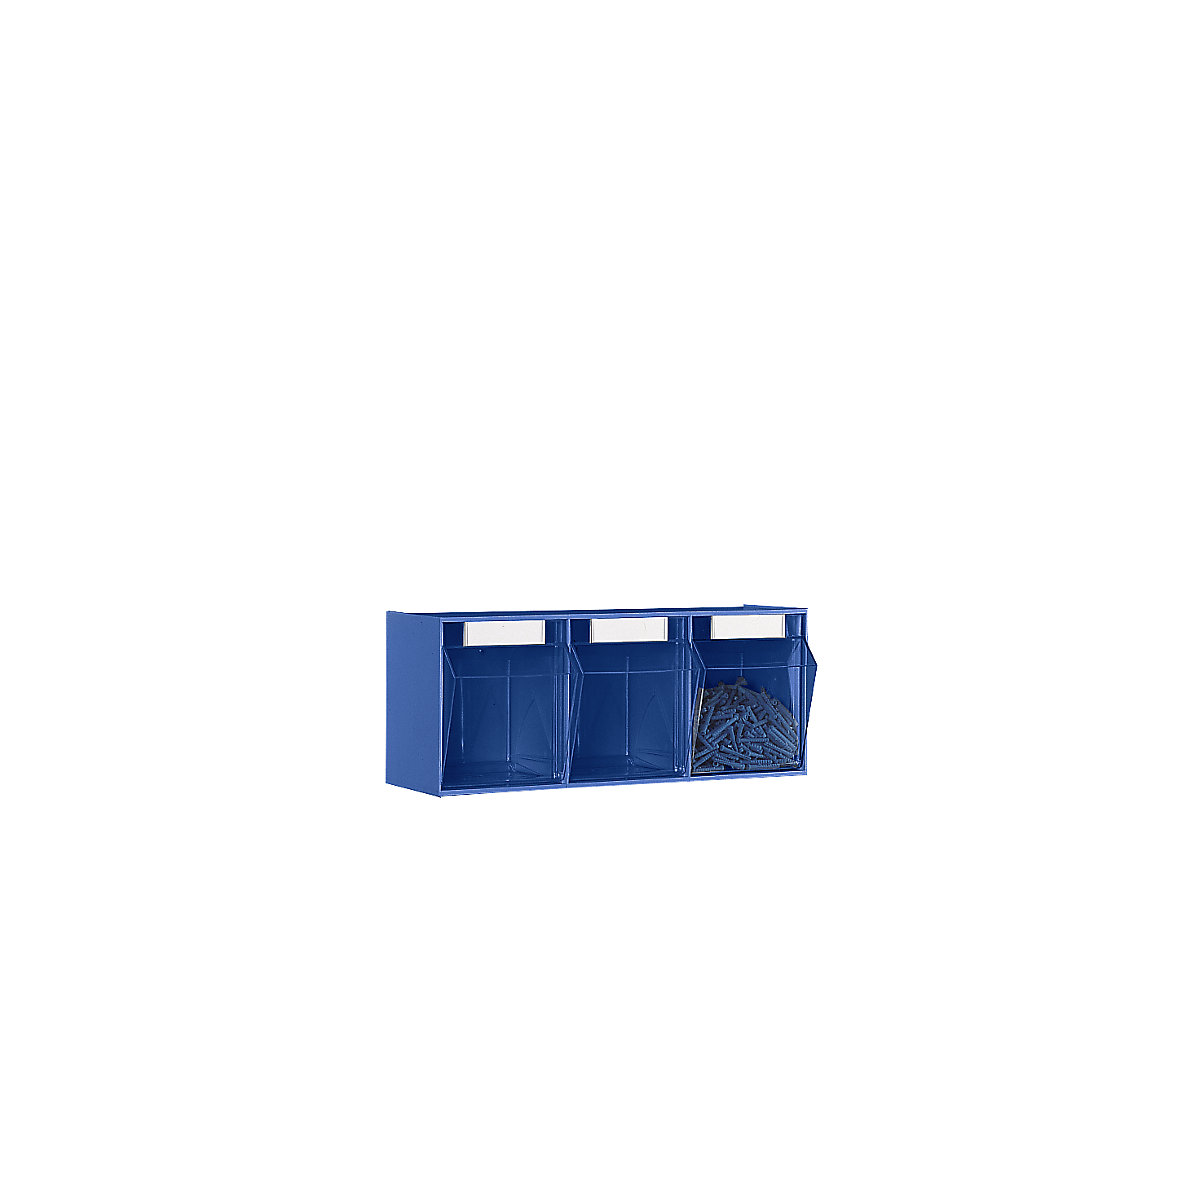 Système de bacs pivotants, casier h x l x p 240 x 600 x 197 mm, 3 bacs bleus-8